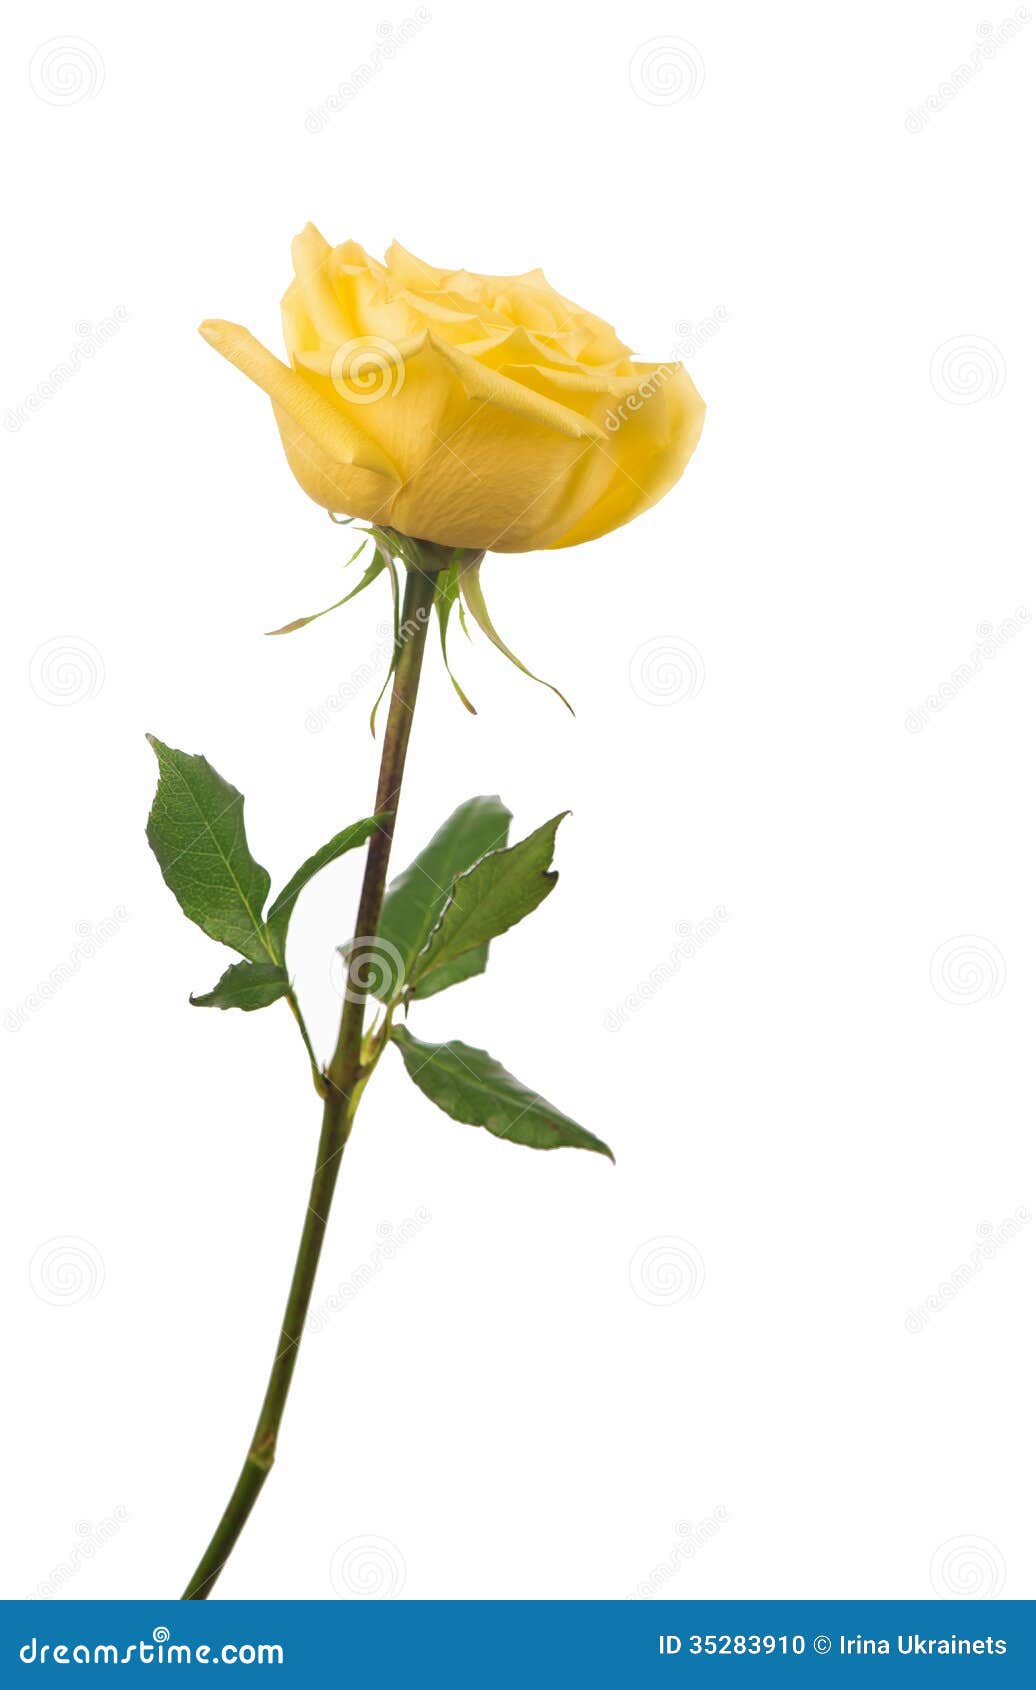 clipart rose jaune - photo #35